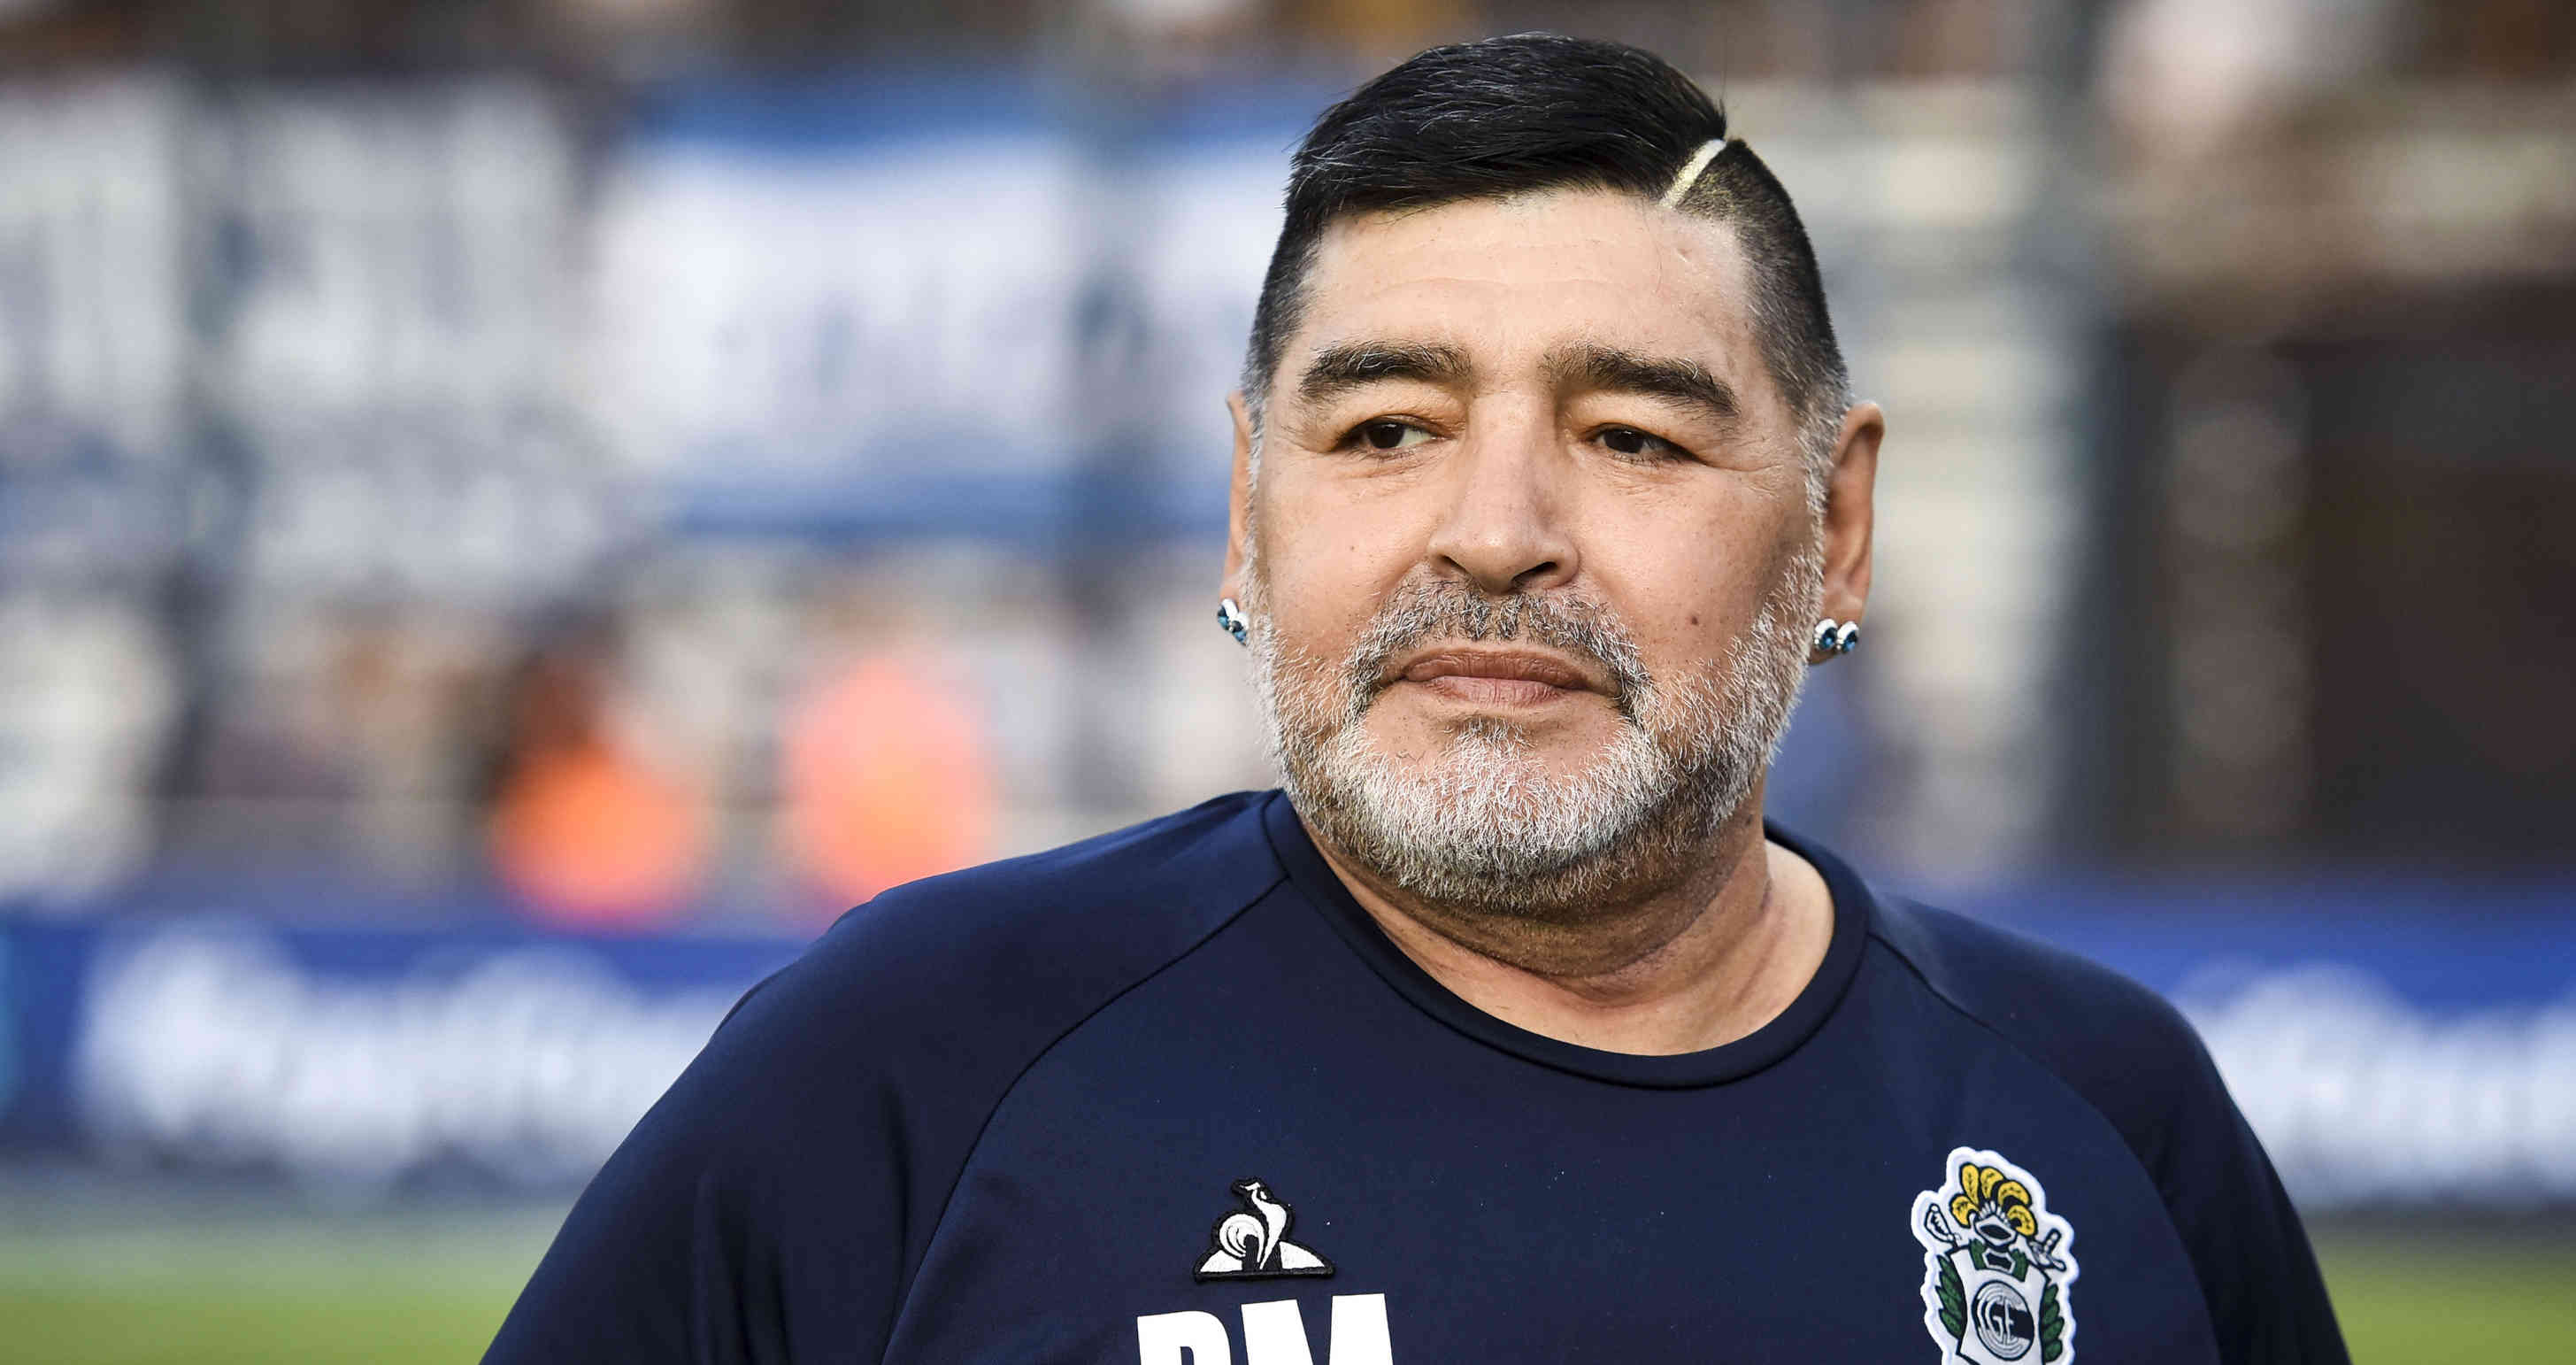 Sale a la luz impactante video de Diego Armando Maradona días antes de morir